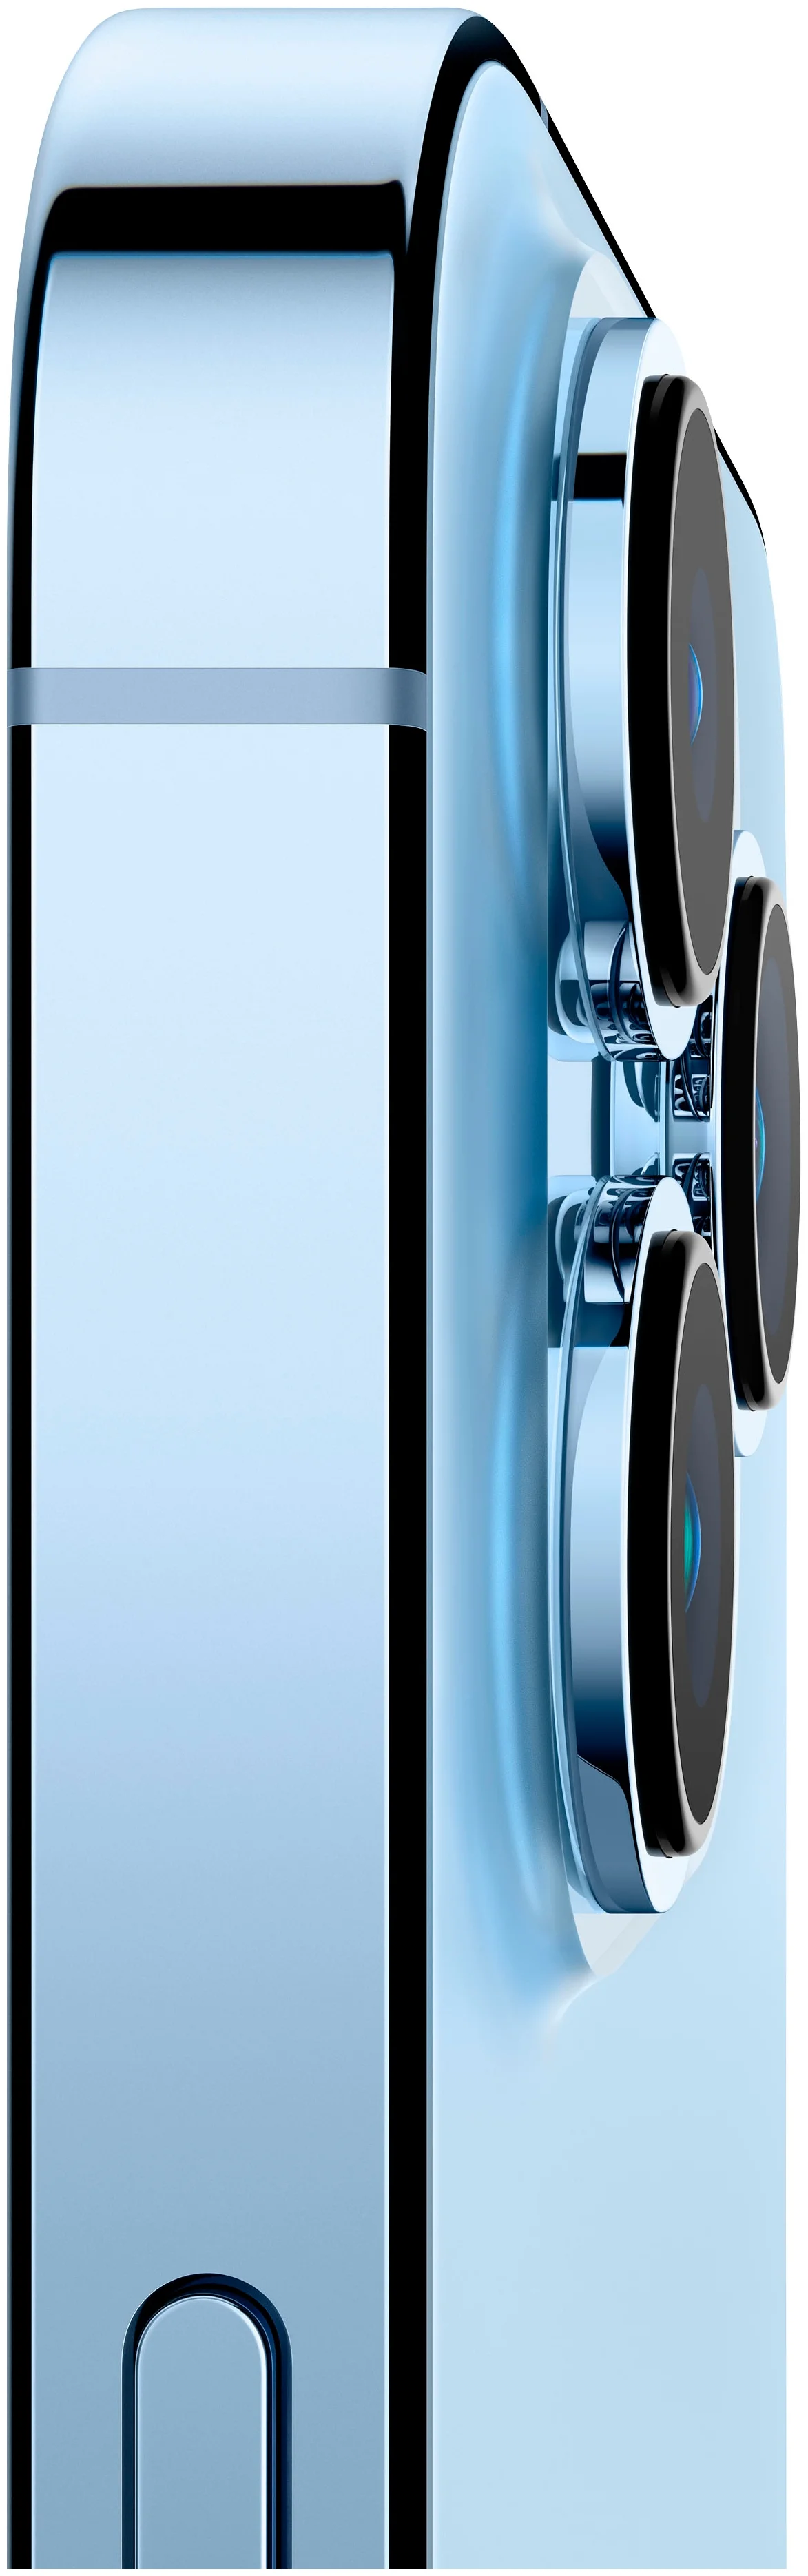 Смартфон Apple iPhone 13 Pro 1TB Sierra Blue (Небесно-голубой) , картинка 2